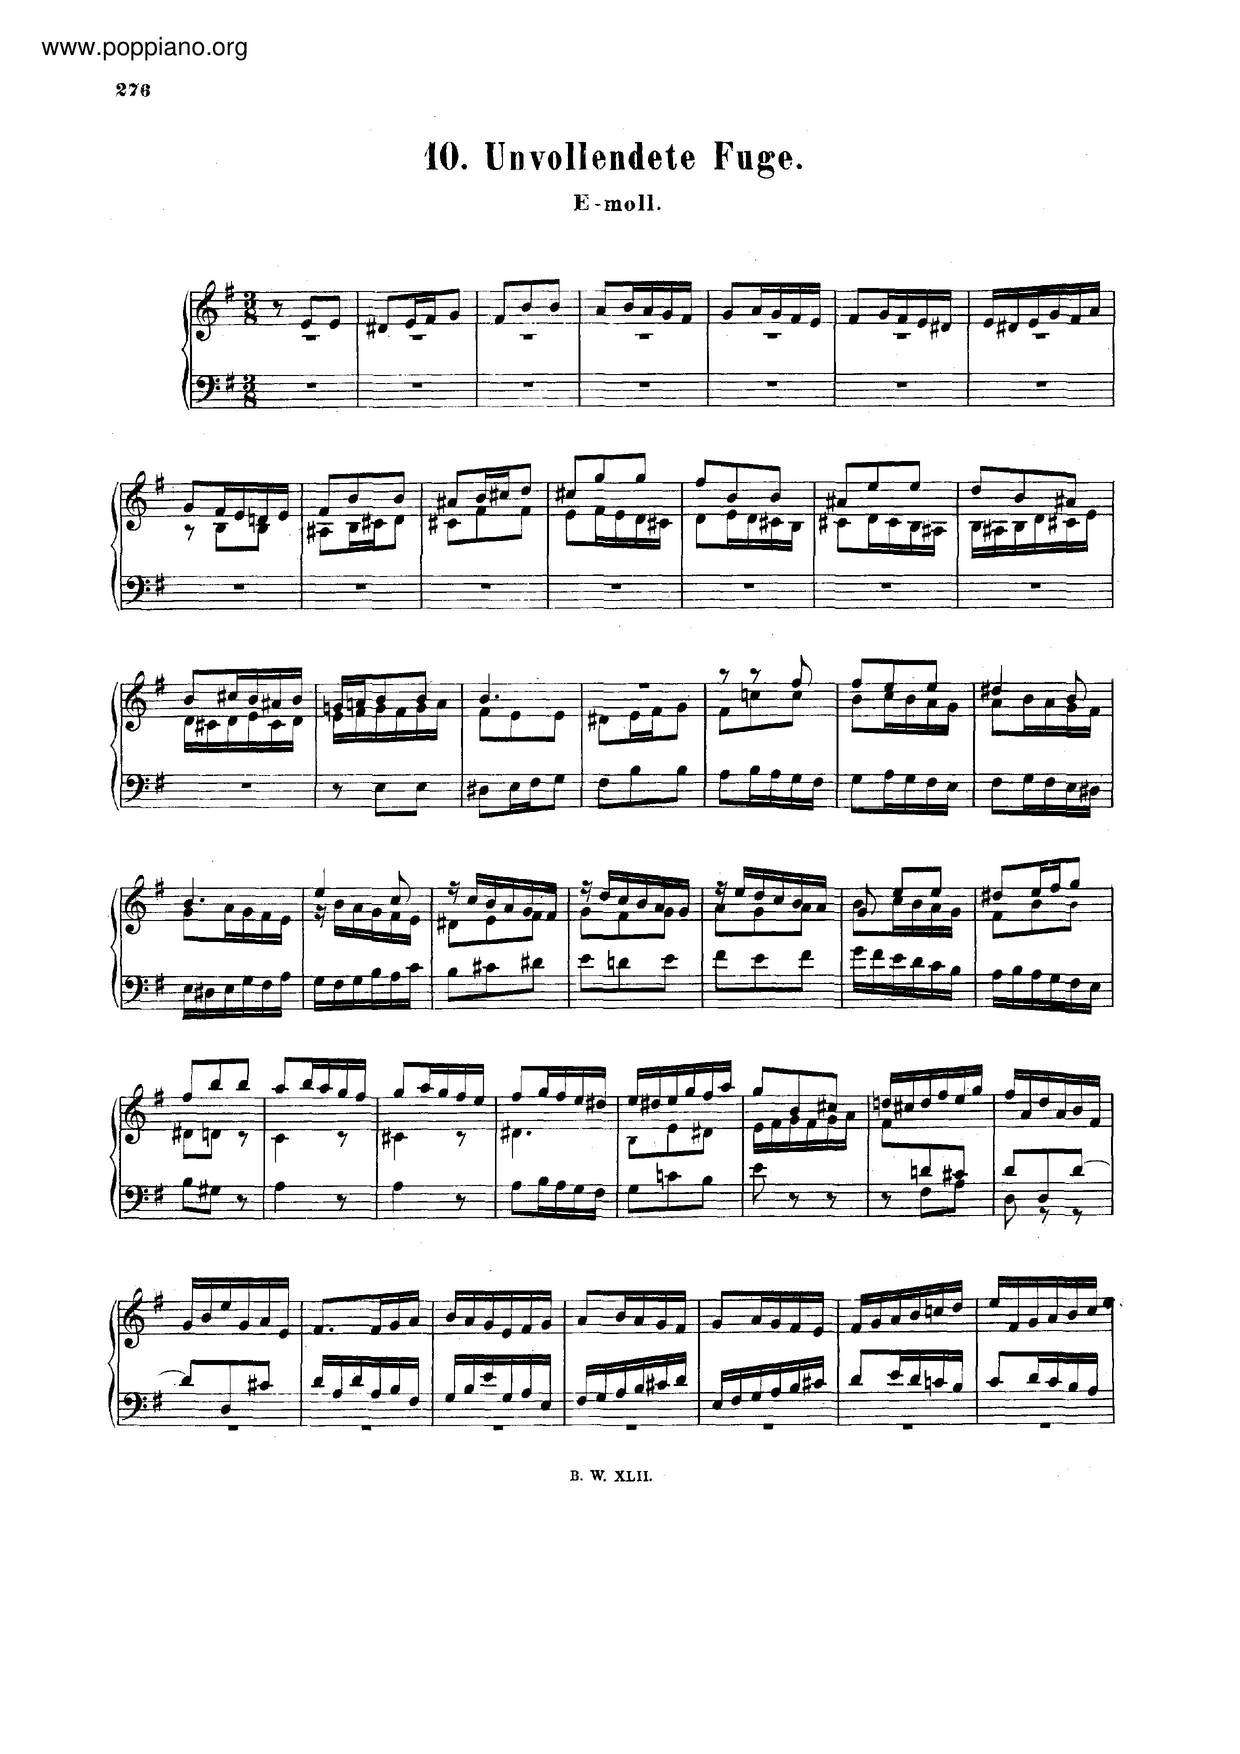 Fugue In E Minor, BWV 960 Score